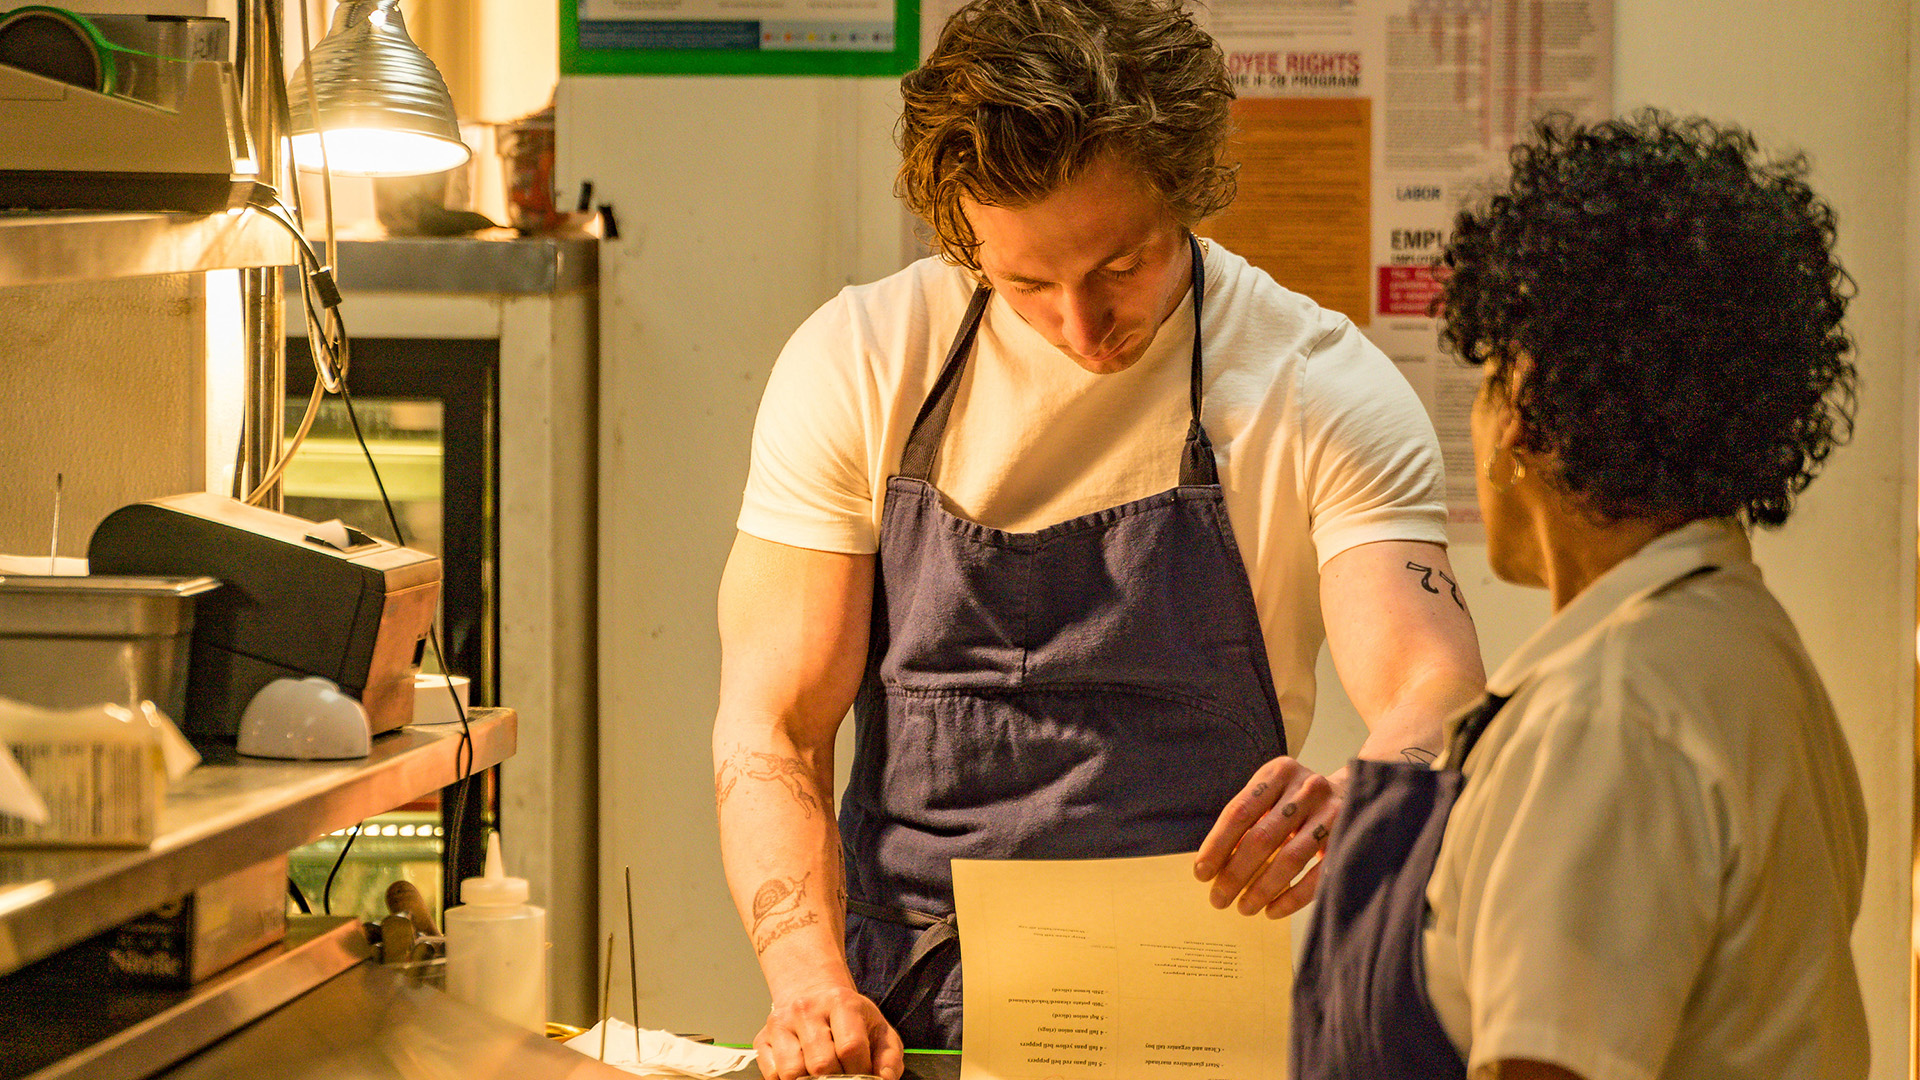 جرمی آلن وایت در نقش کارمن برزاتو در سریال The Bear سرآشپز و رئیس یک رستوران کوچک است